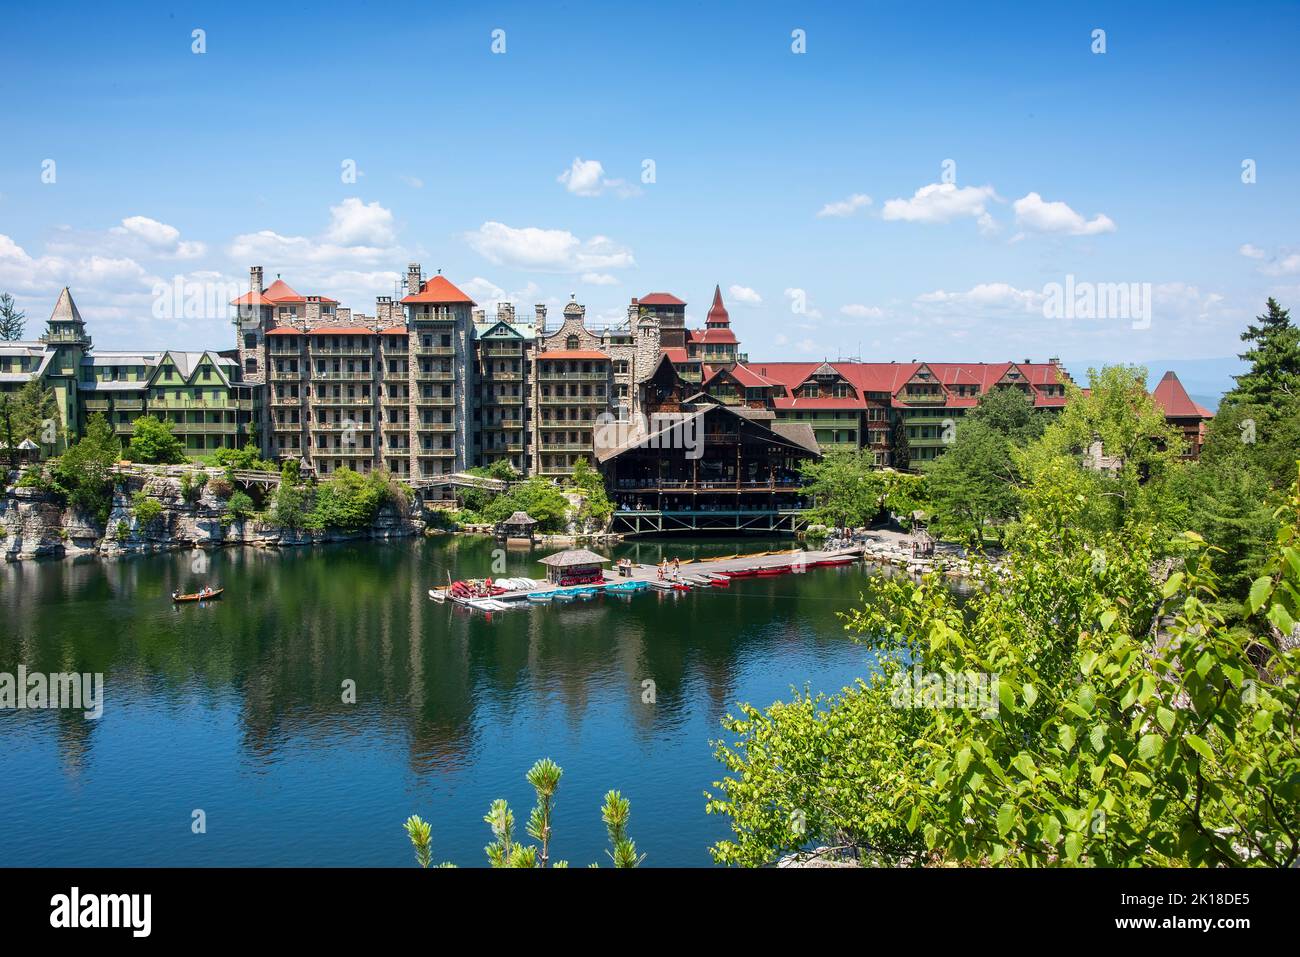 New Paltz, New York - 11 luglio 2015: Fondato dalla famiglia Smiley nel 1869, il resort del castello vittoriano si trova nella Hudson Valley, a 90 miglia nort Foto Stock